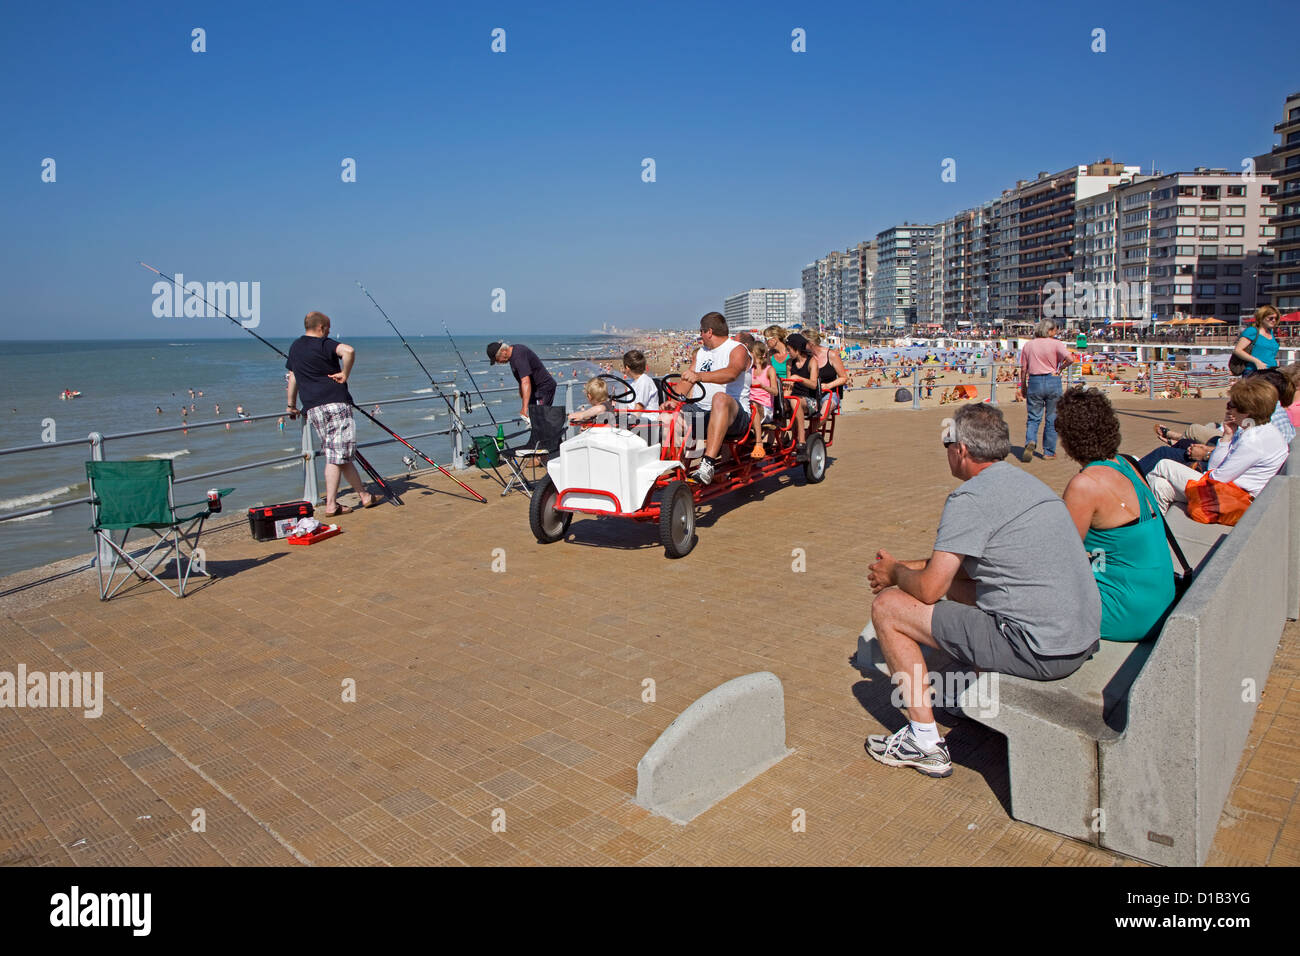 Meeresangler und Go-cart mit Touristen am Deich Strandpromenade im Seebad an der Nordseeküste, Belgien Stockfoto